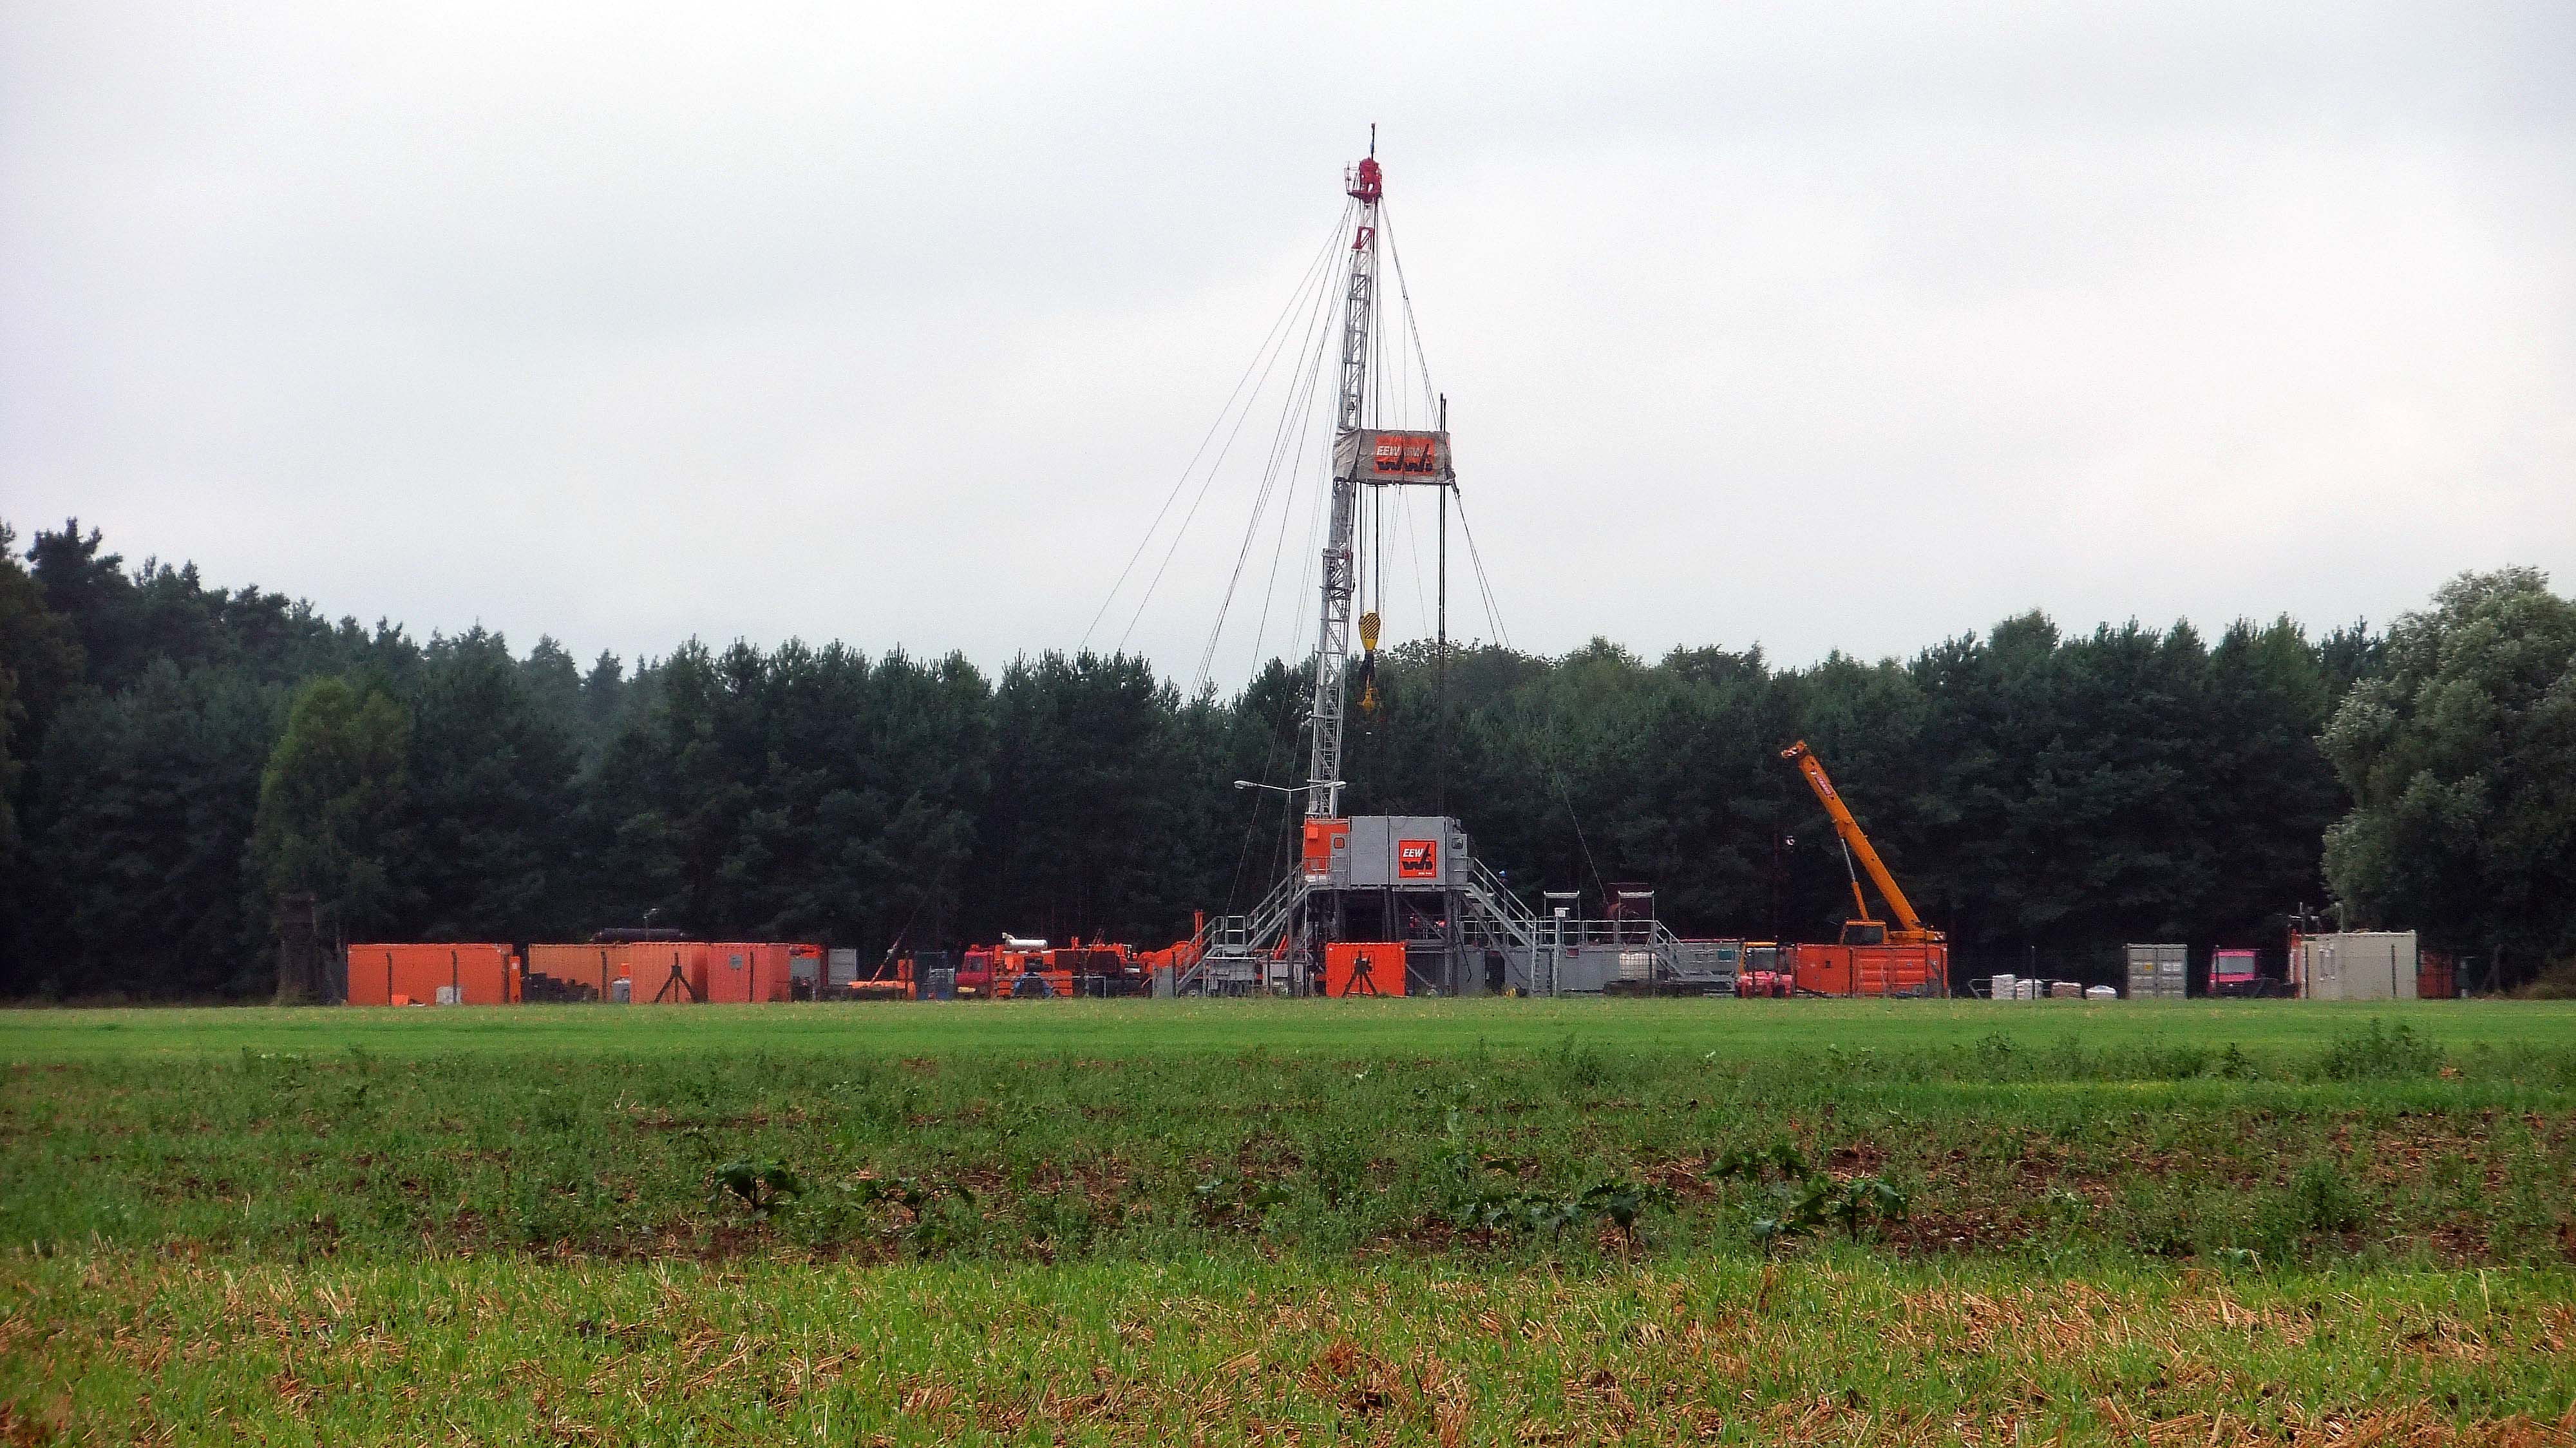 Workoverarbeiten auf der Erdgasbohrung "SW 85" im August 2013. ©chef79